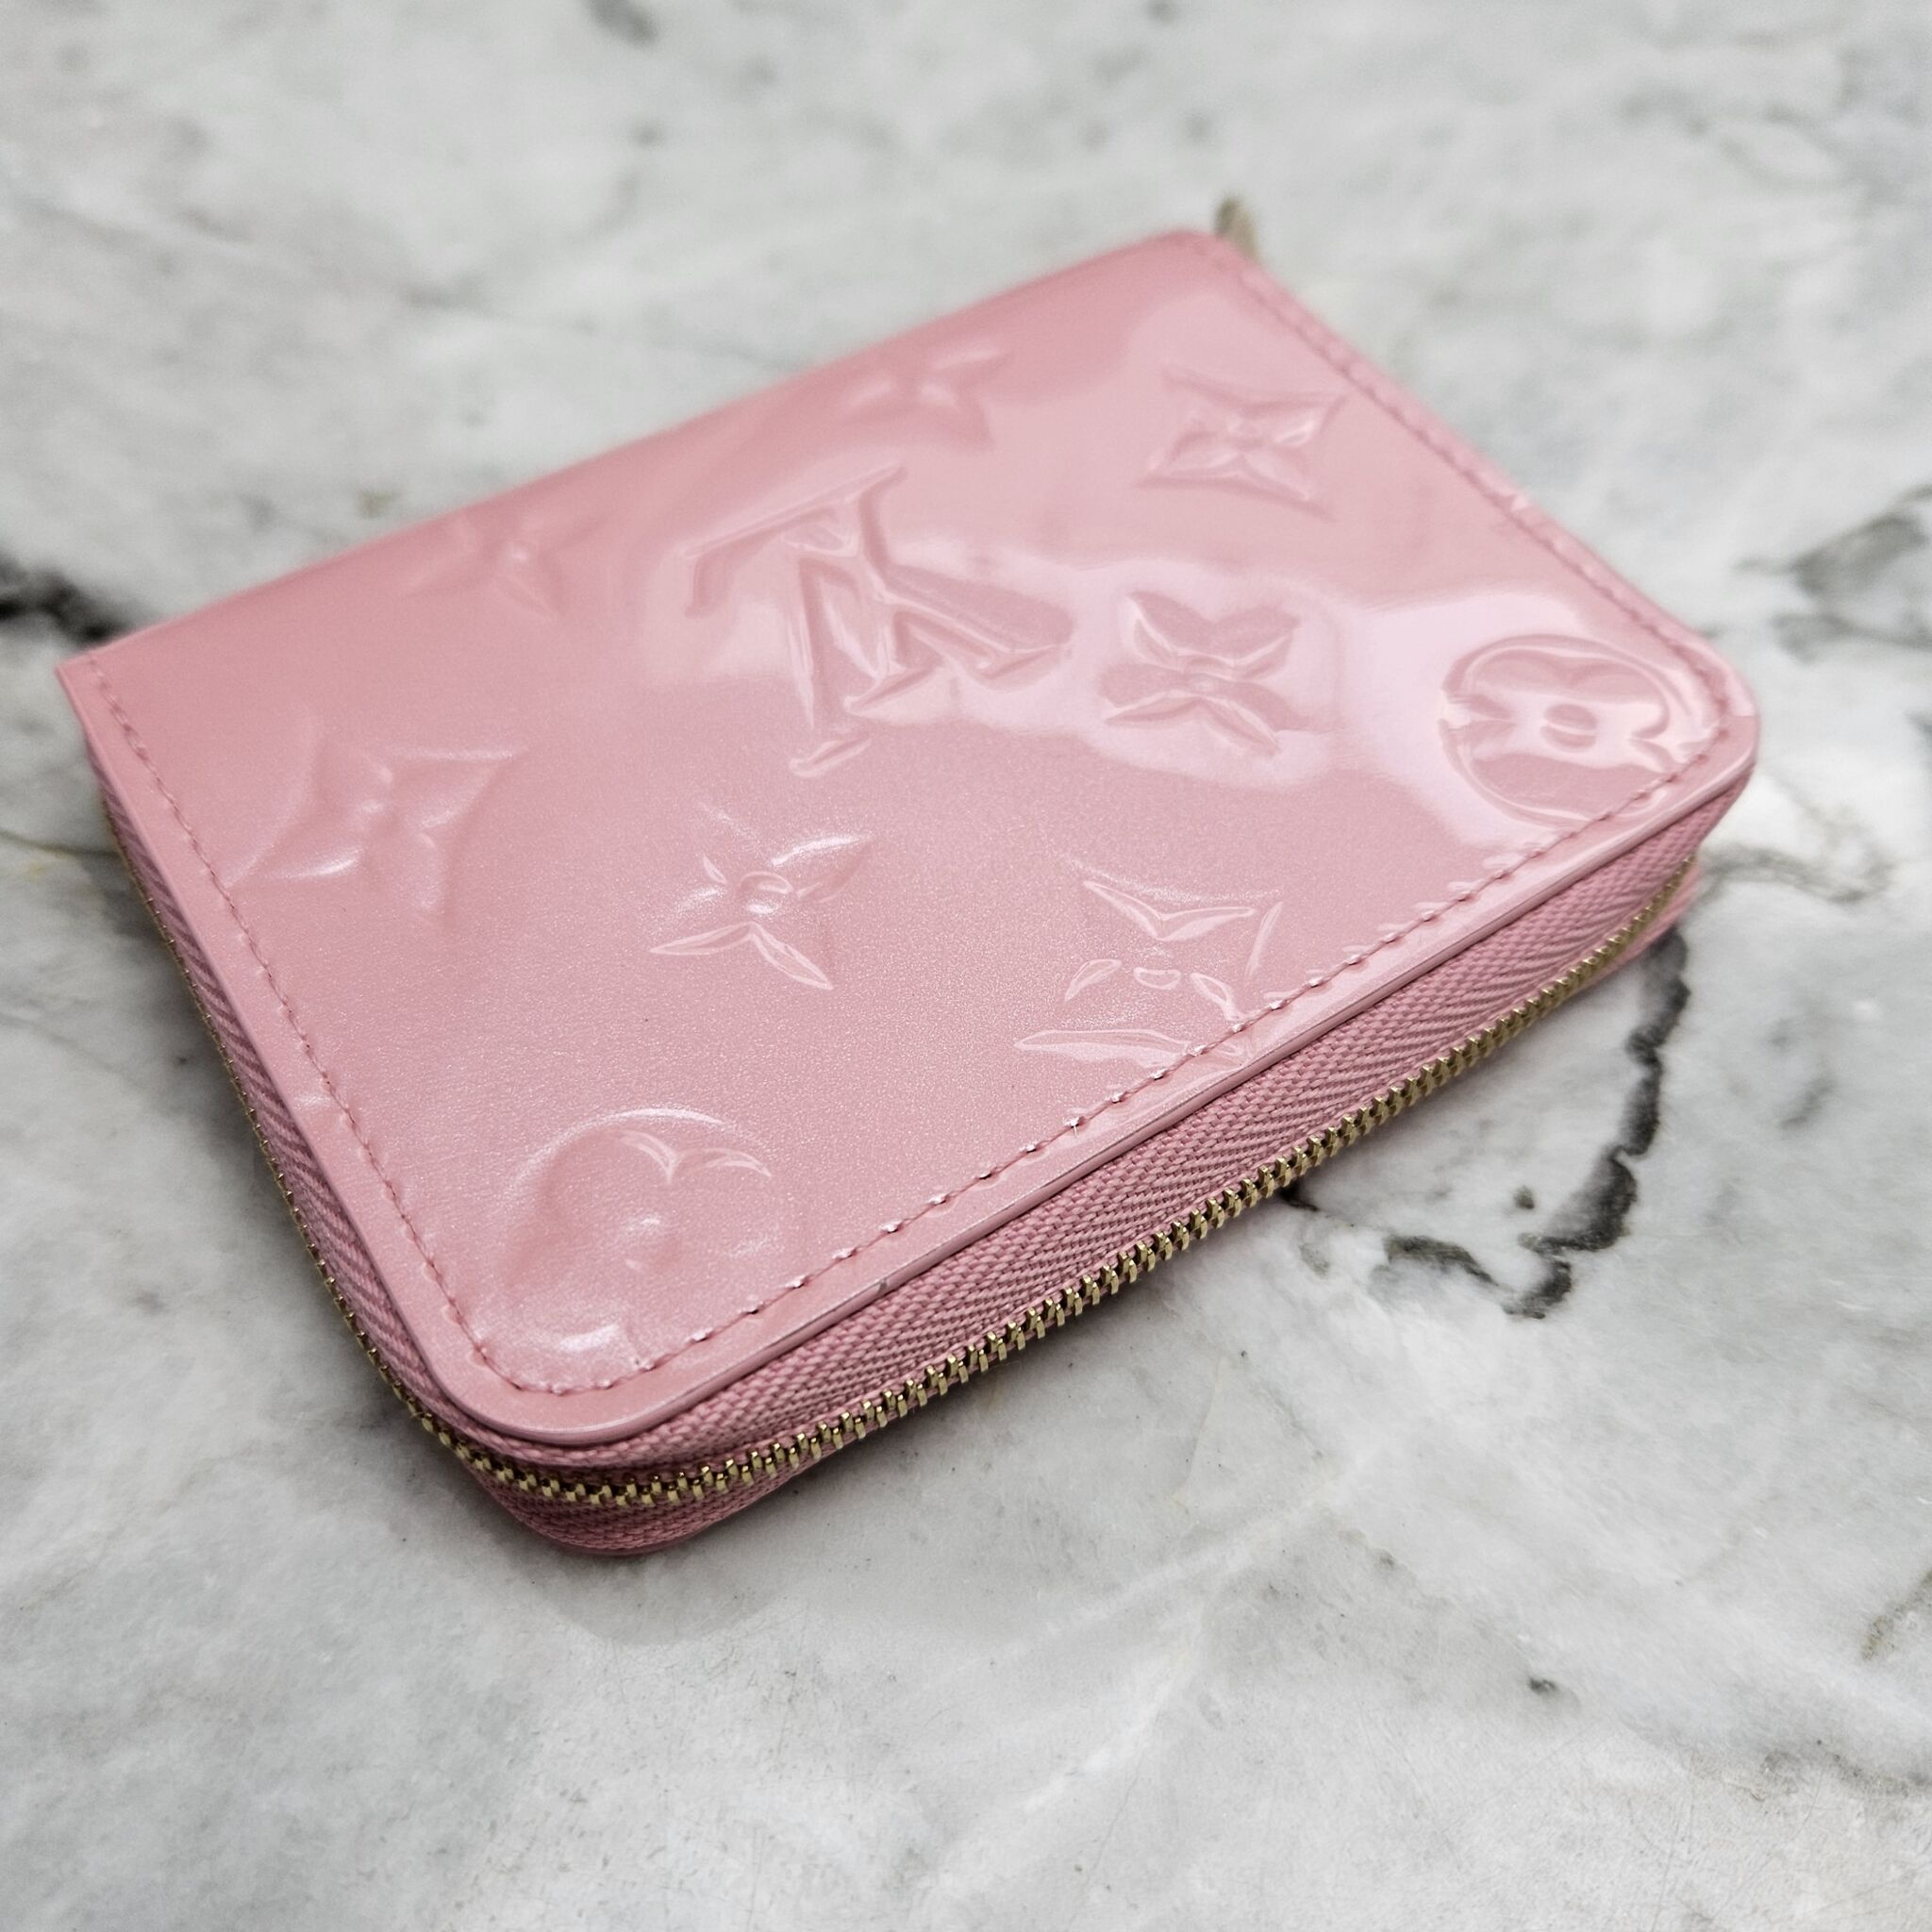 Louis Vuitton, Bags, Louis Vuitton Limited Edition Valentine Vernis Zippy  Wallet W Box Dustbag